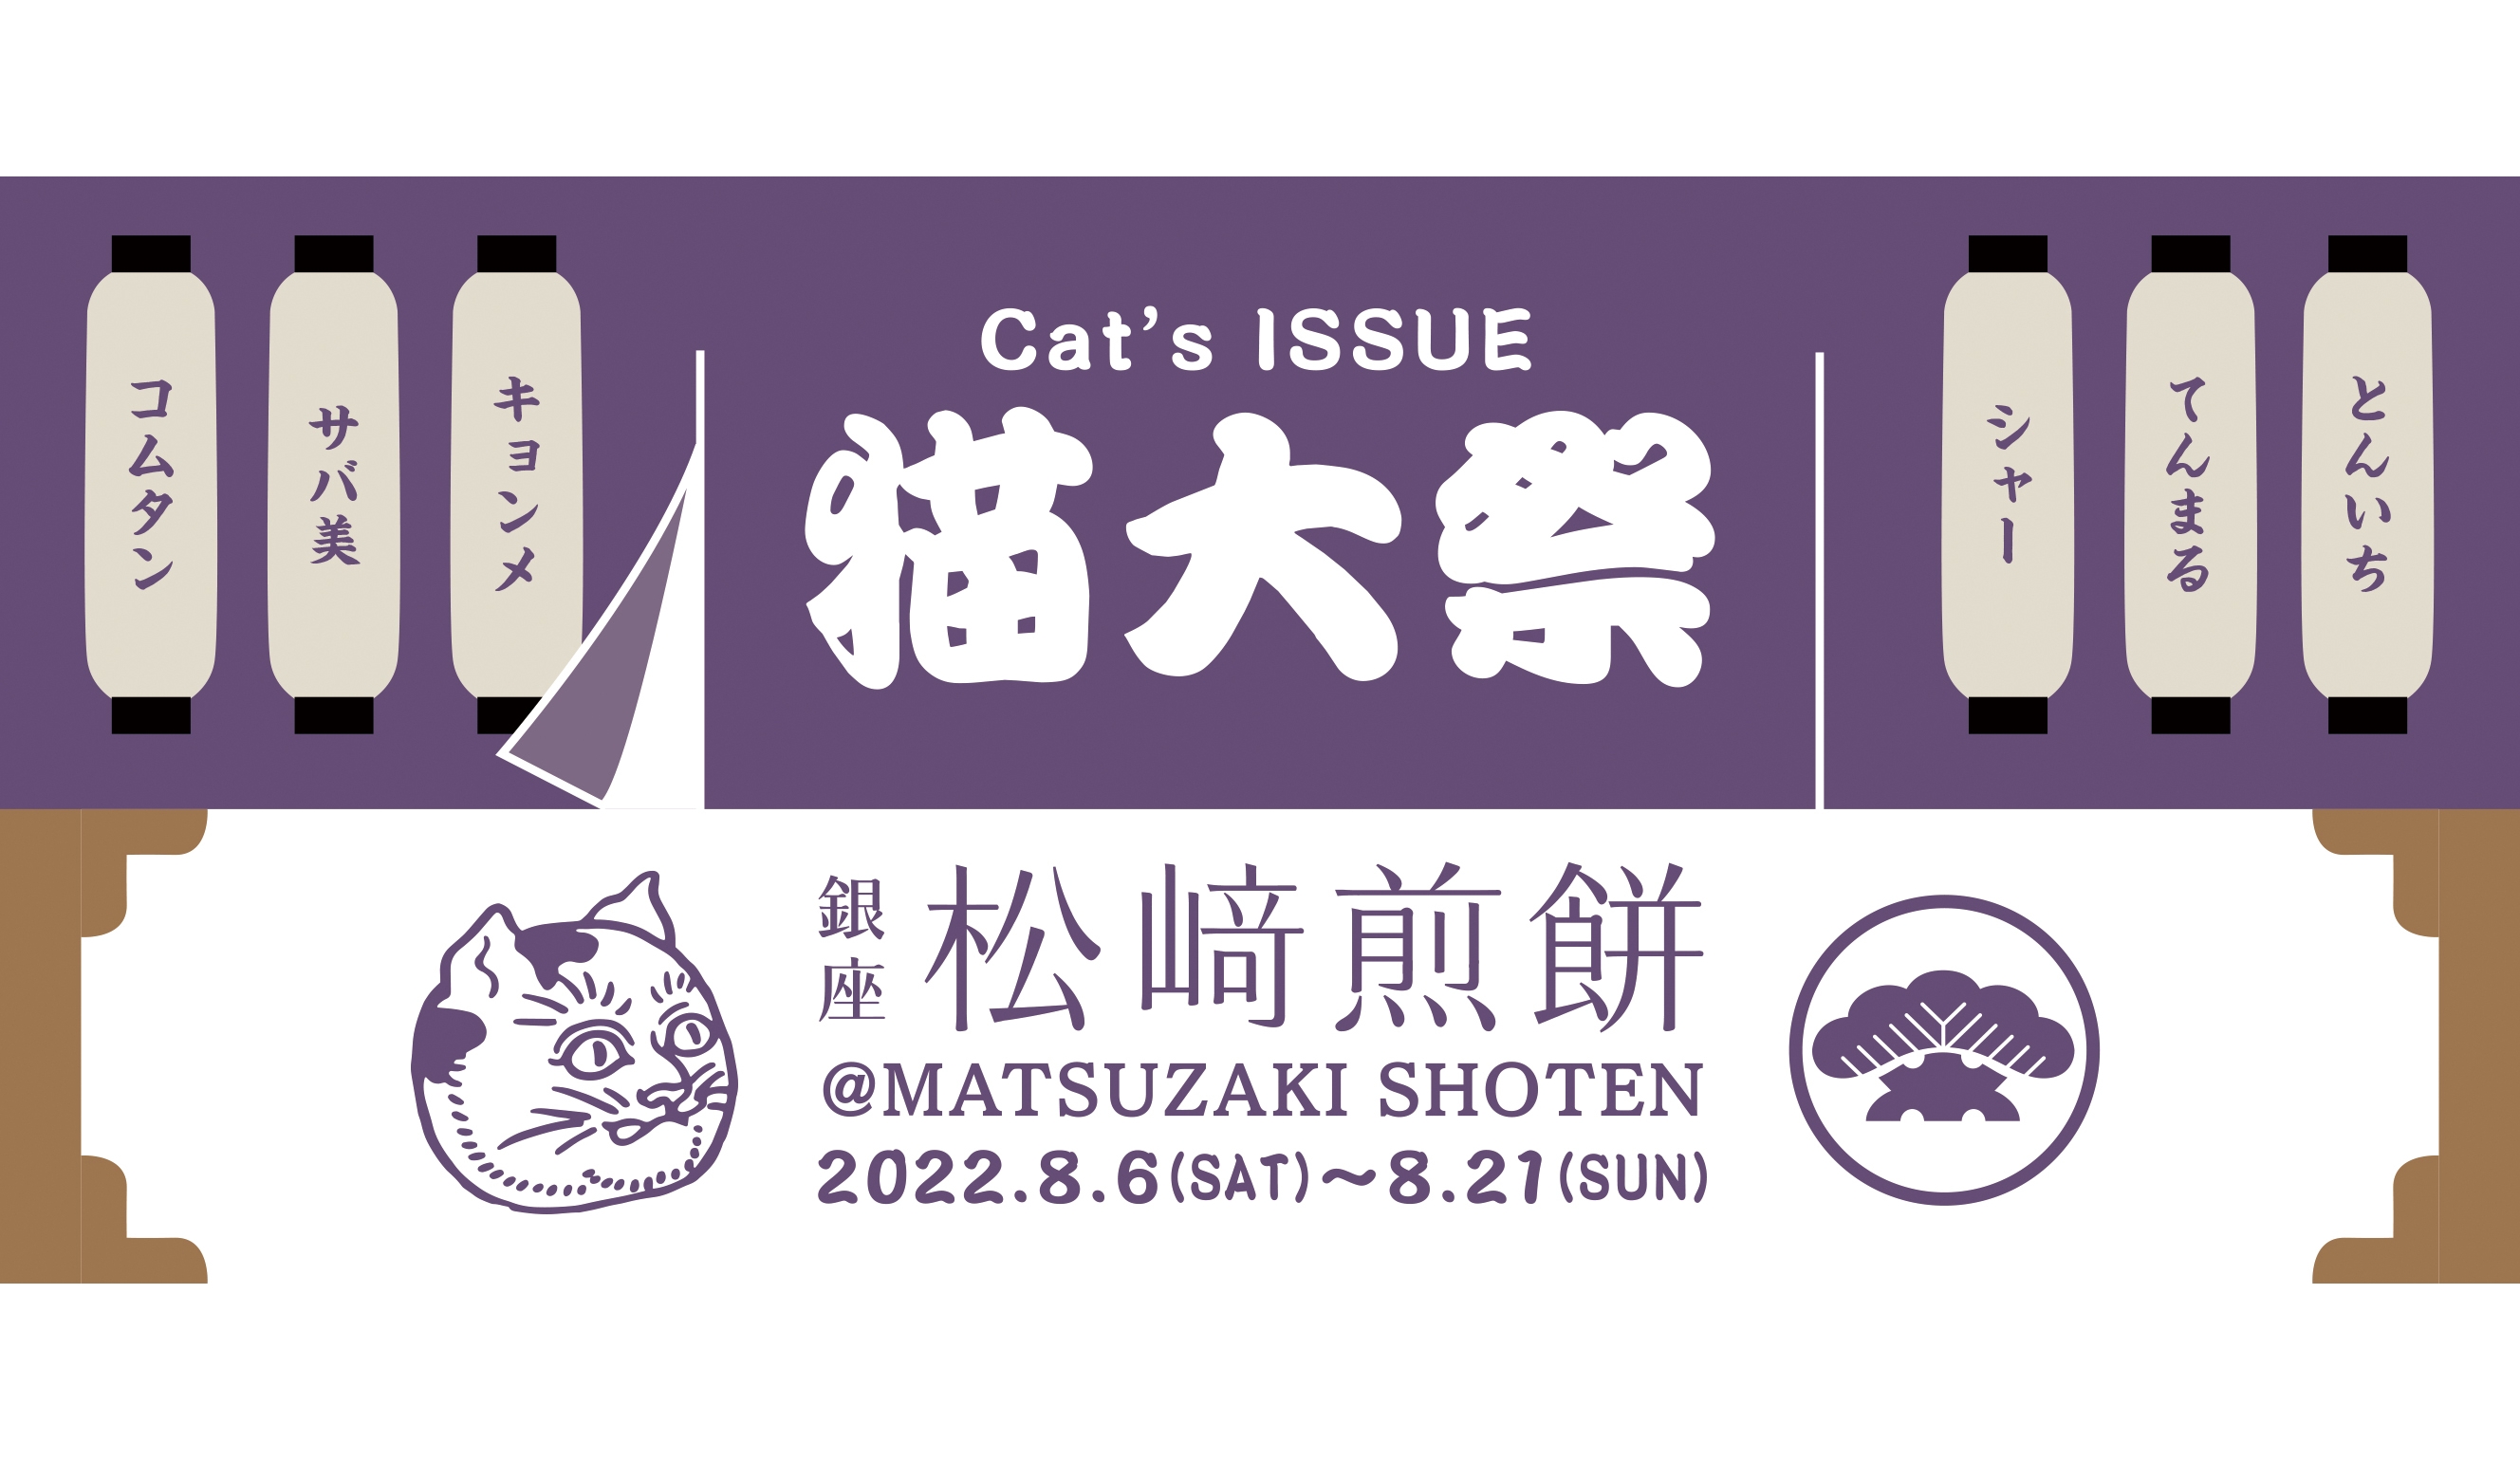 MATSUZAKI Cat’s ISSUE猫大祭20225